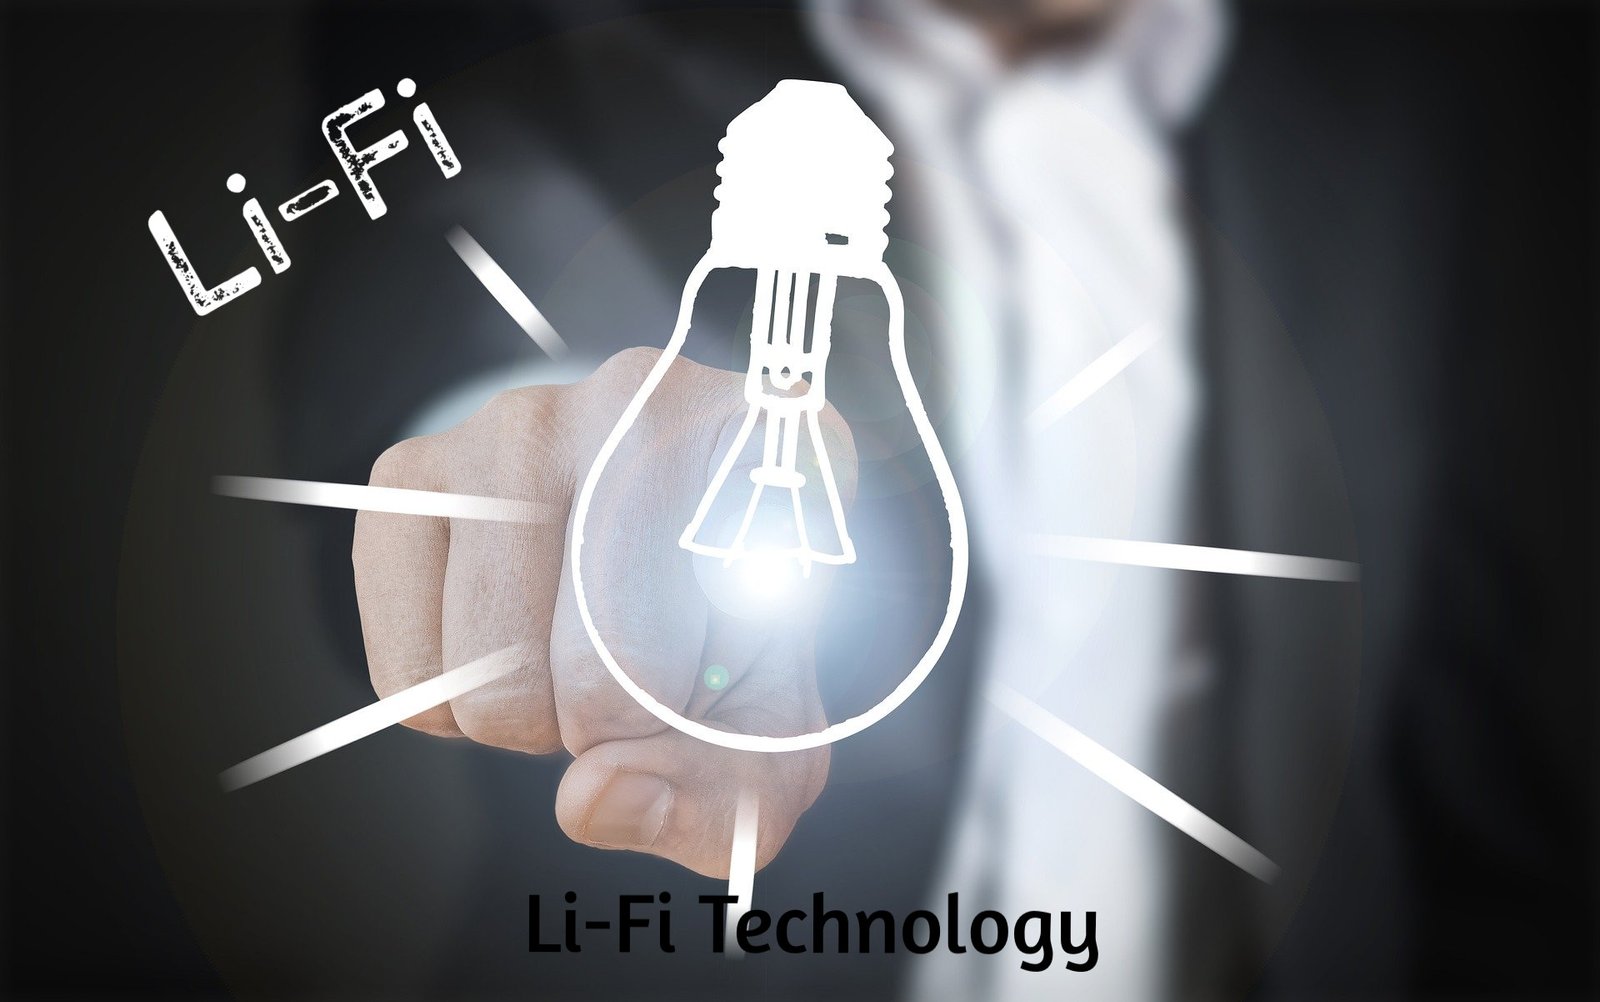 Li-fi technology